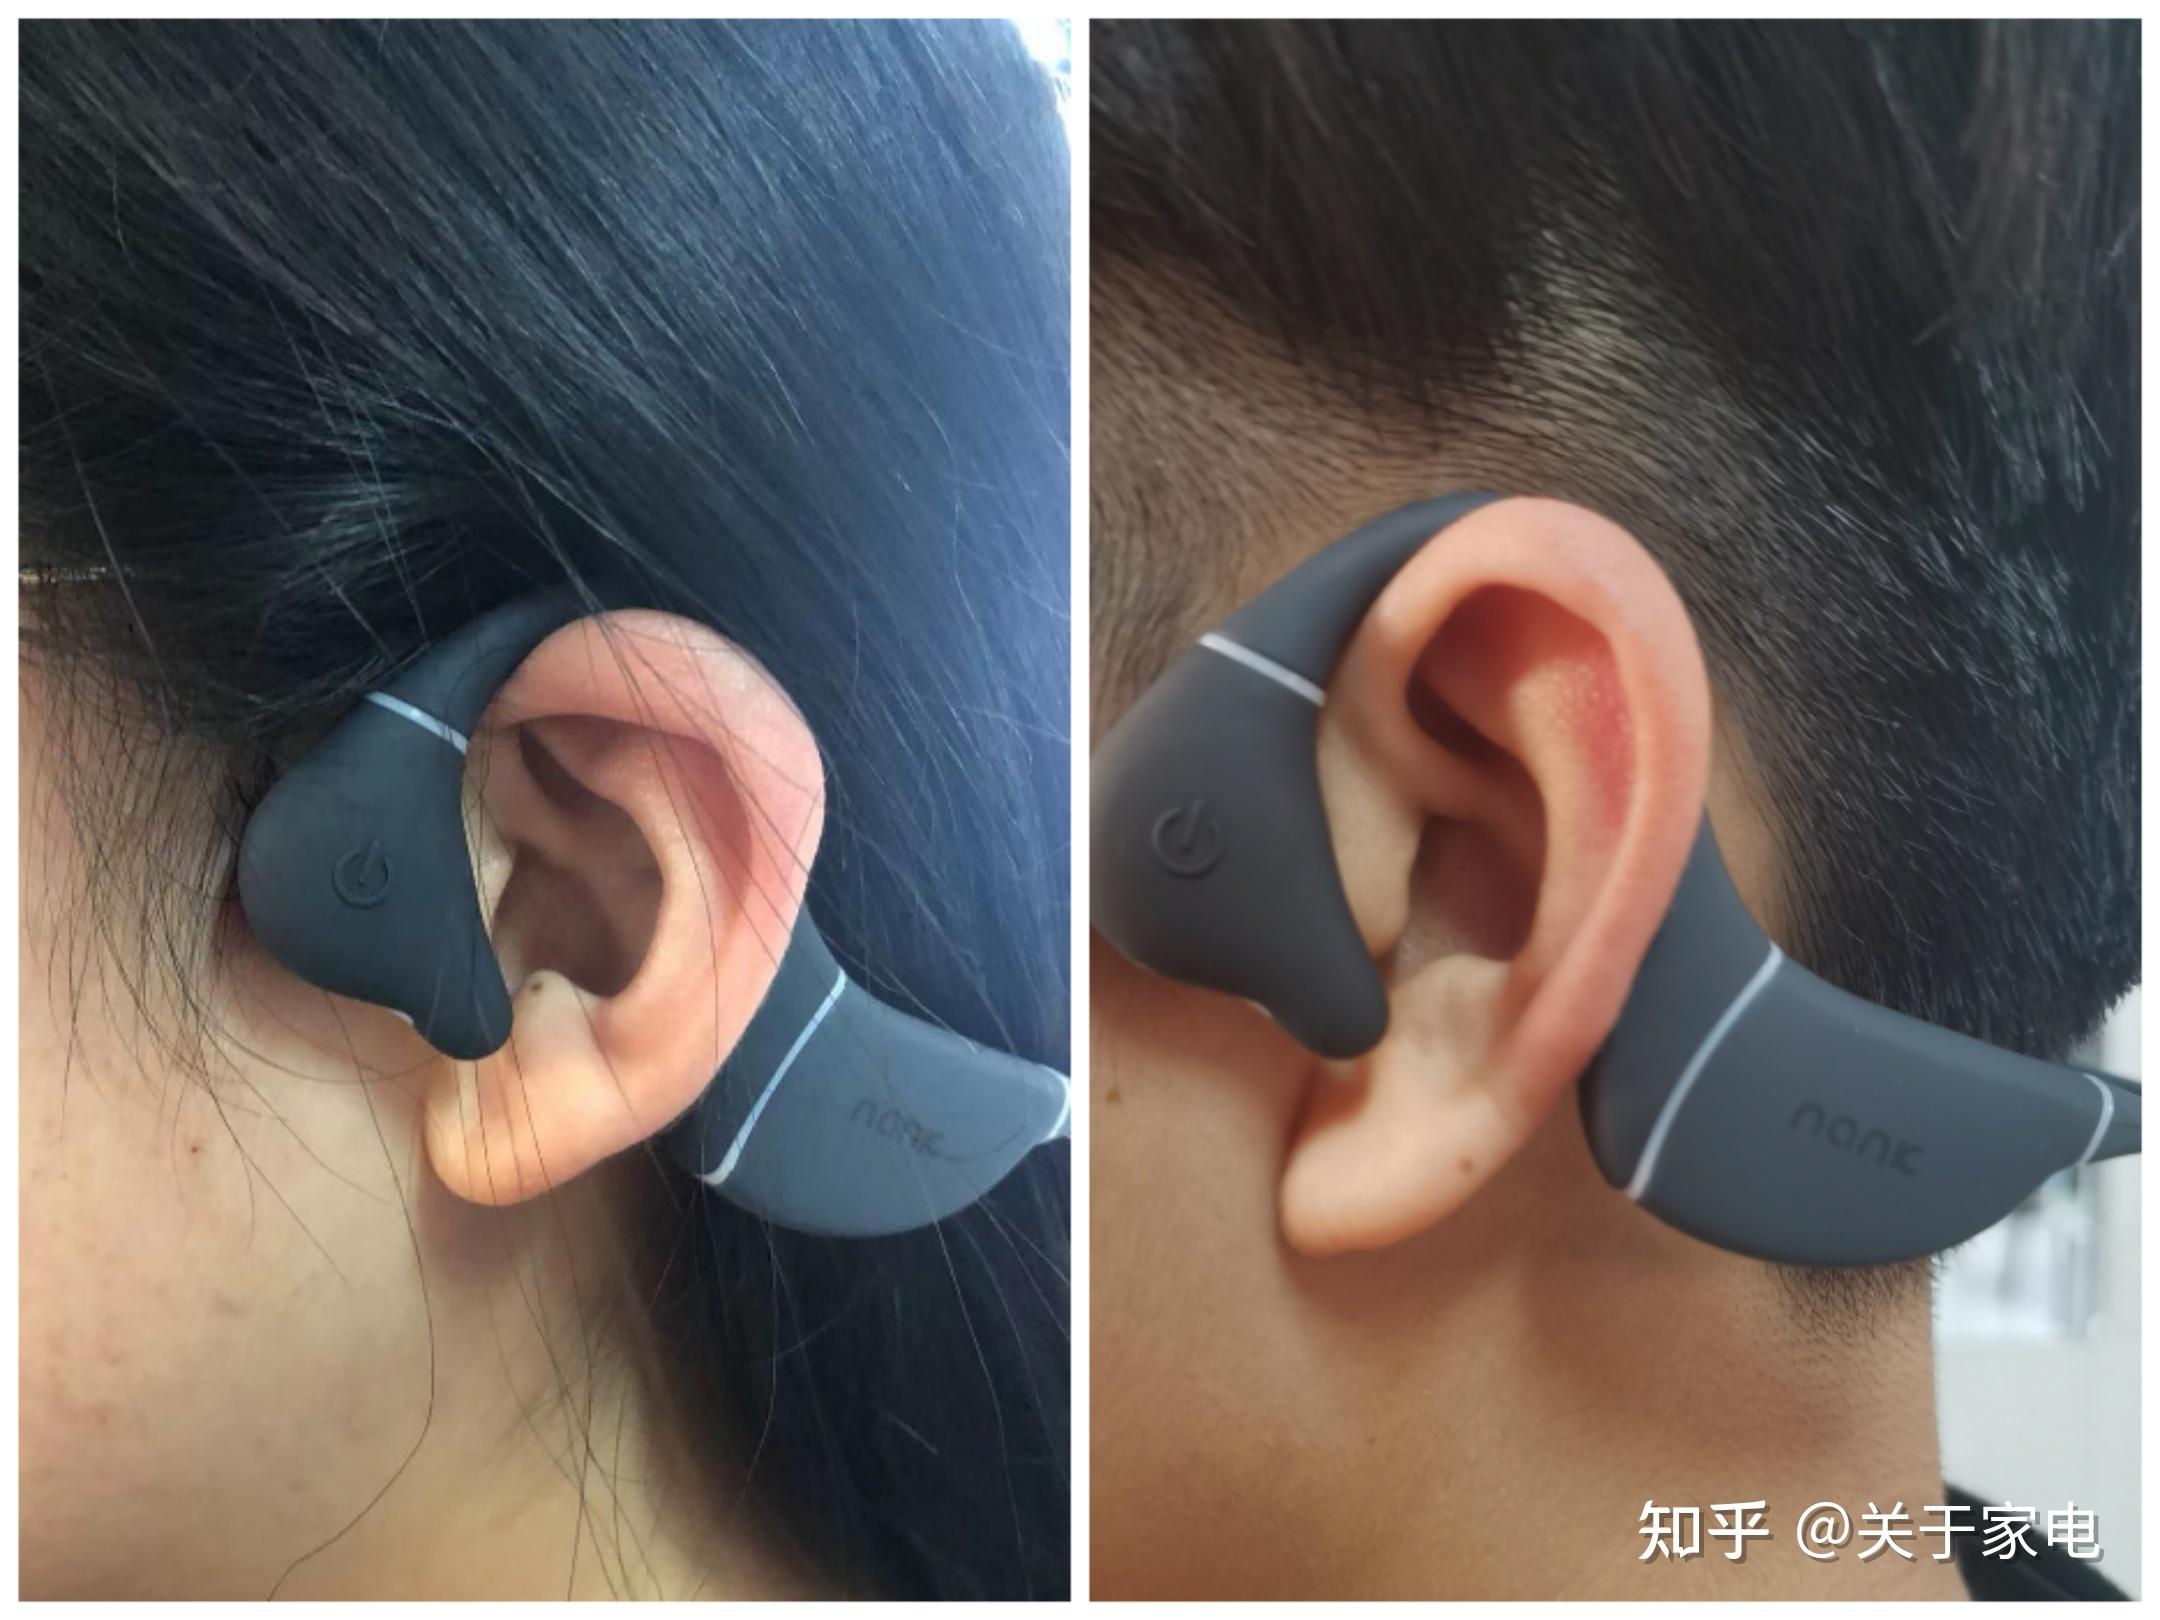 骨传导耳机的优缺点?